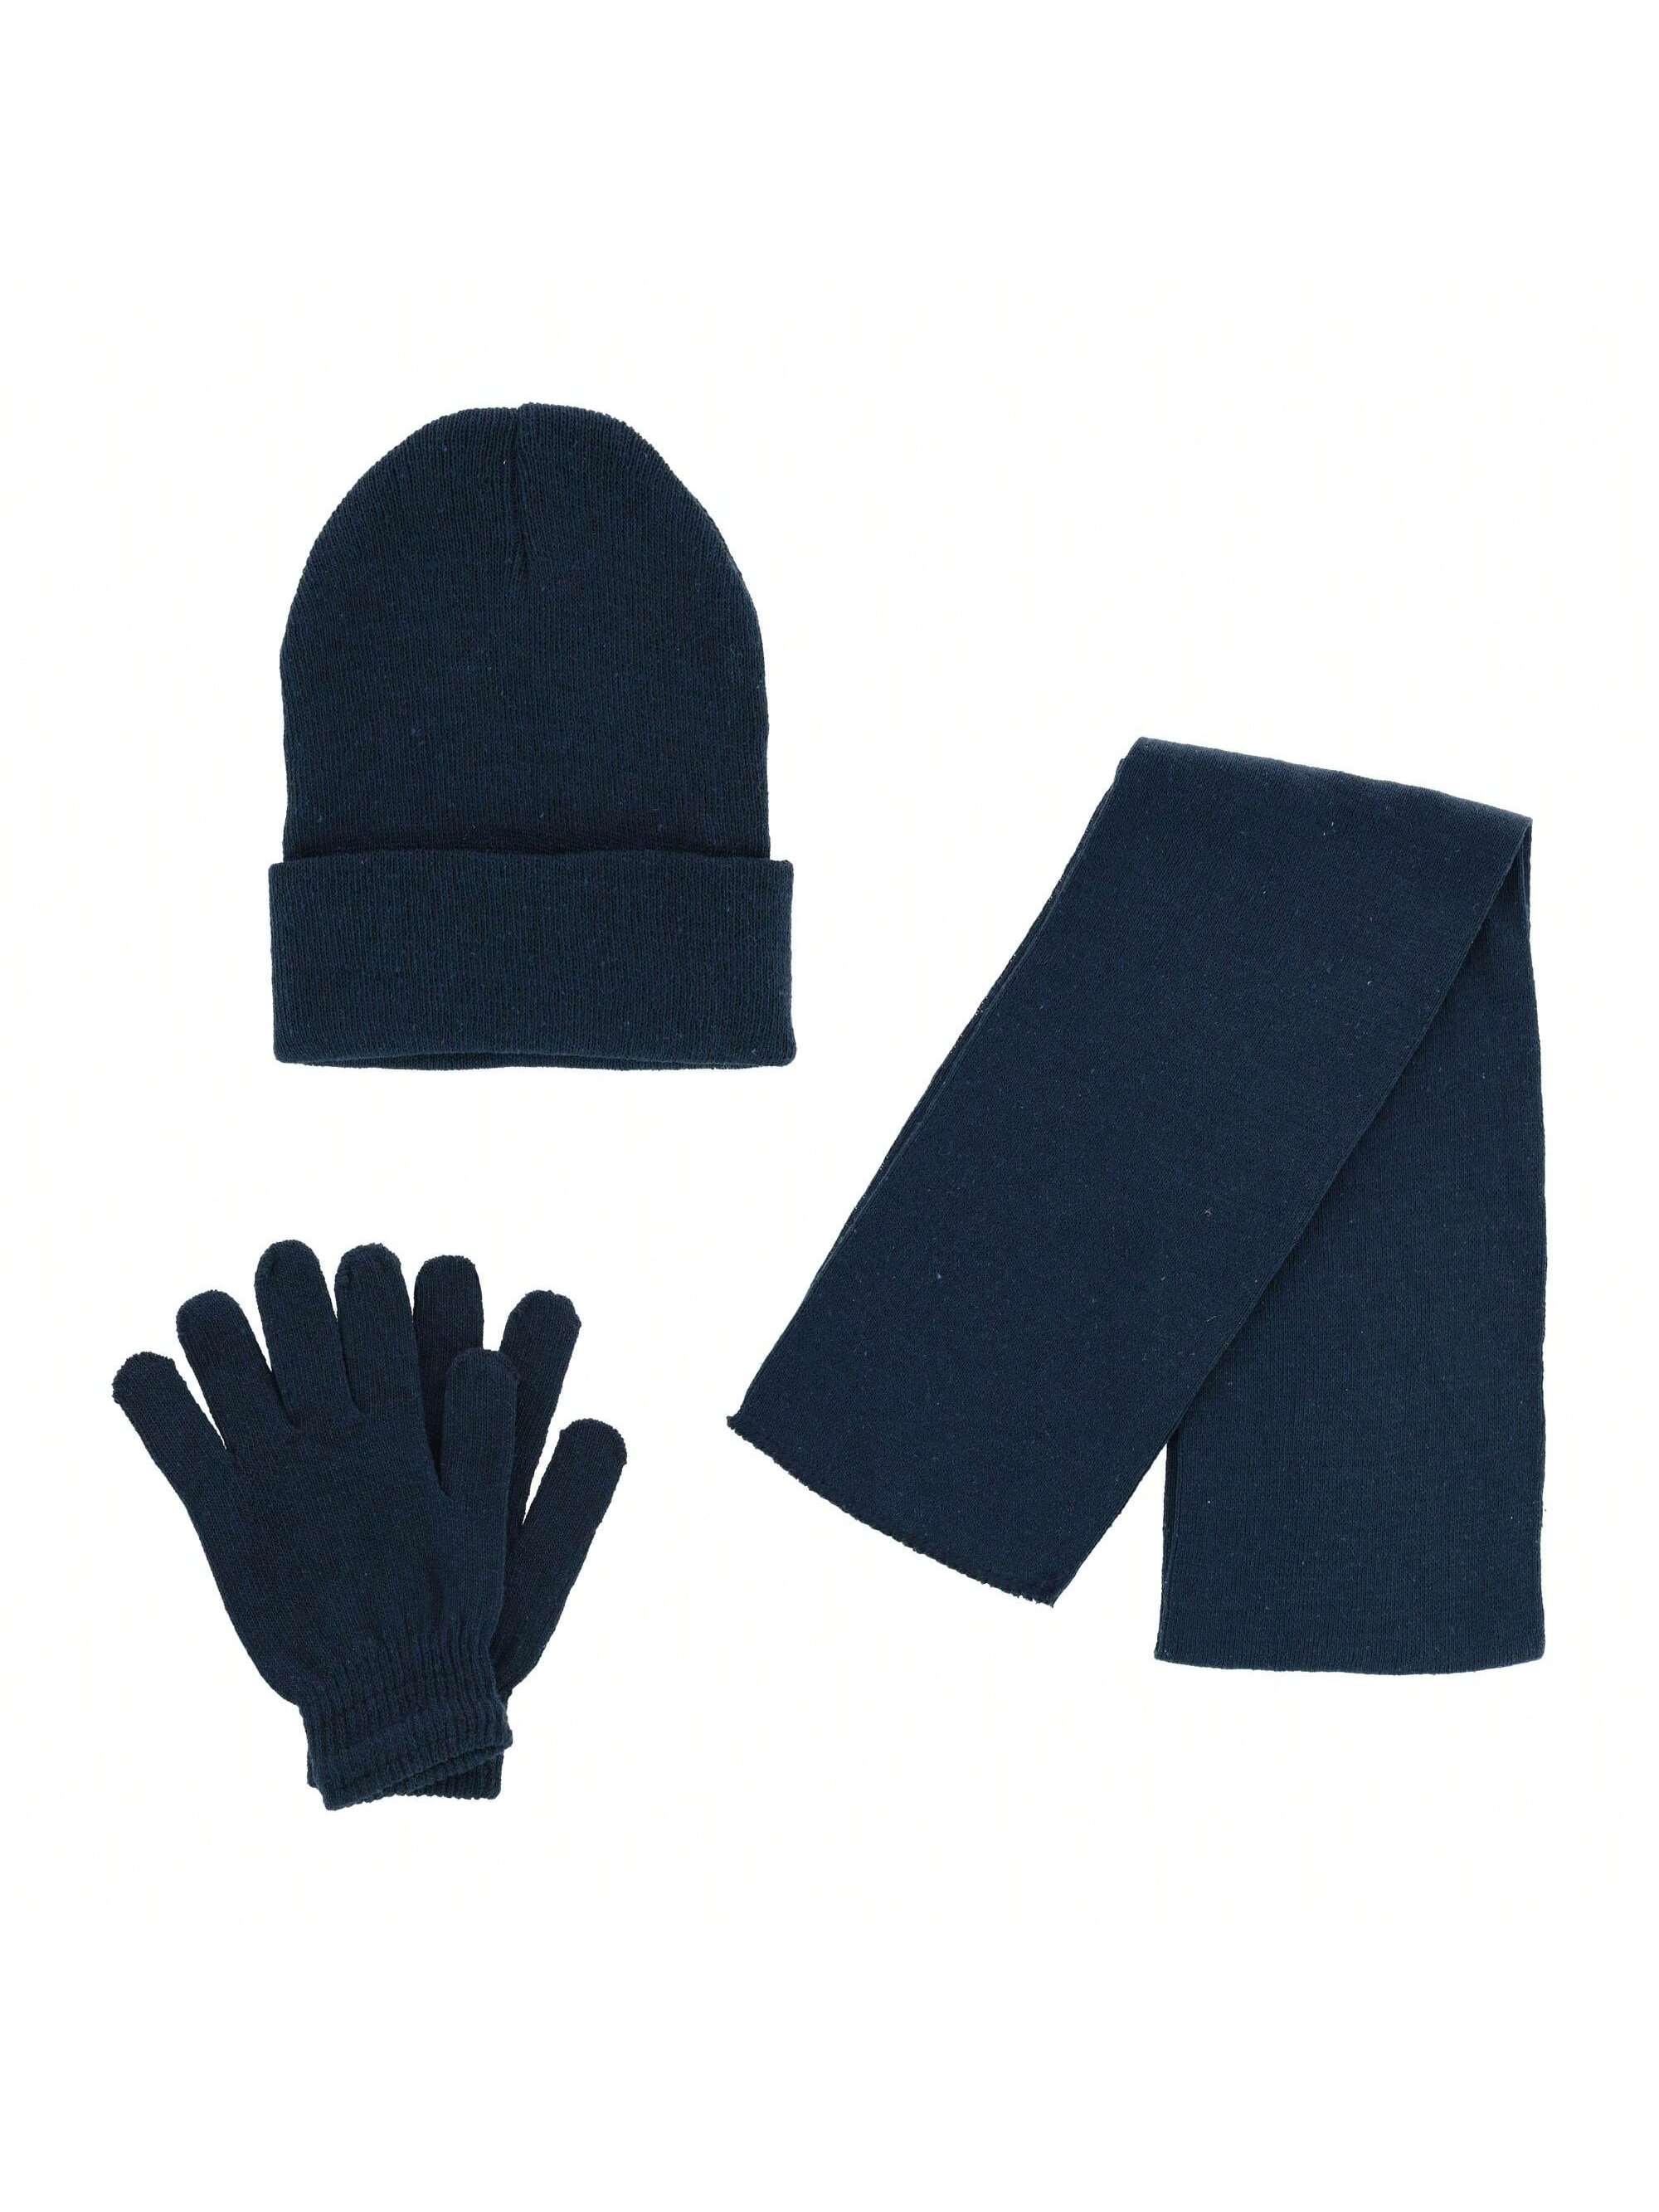 Базовая шапка-бини CTM, комплект из шарфа и перчаток, темно-синий